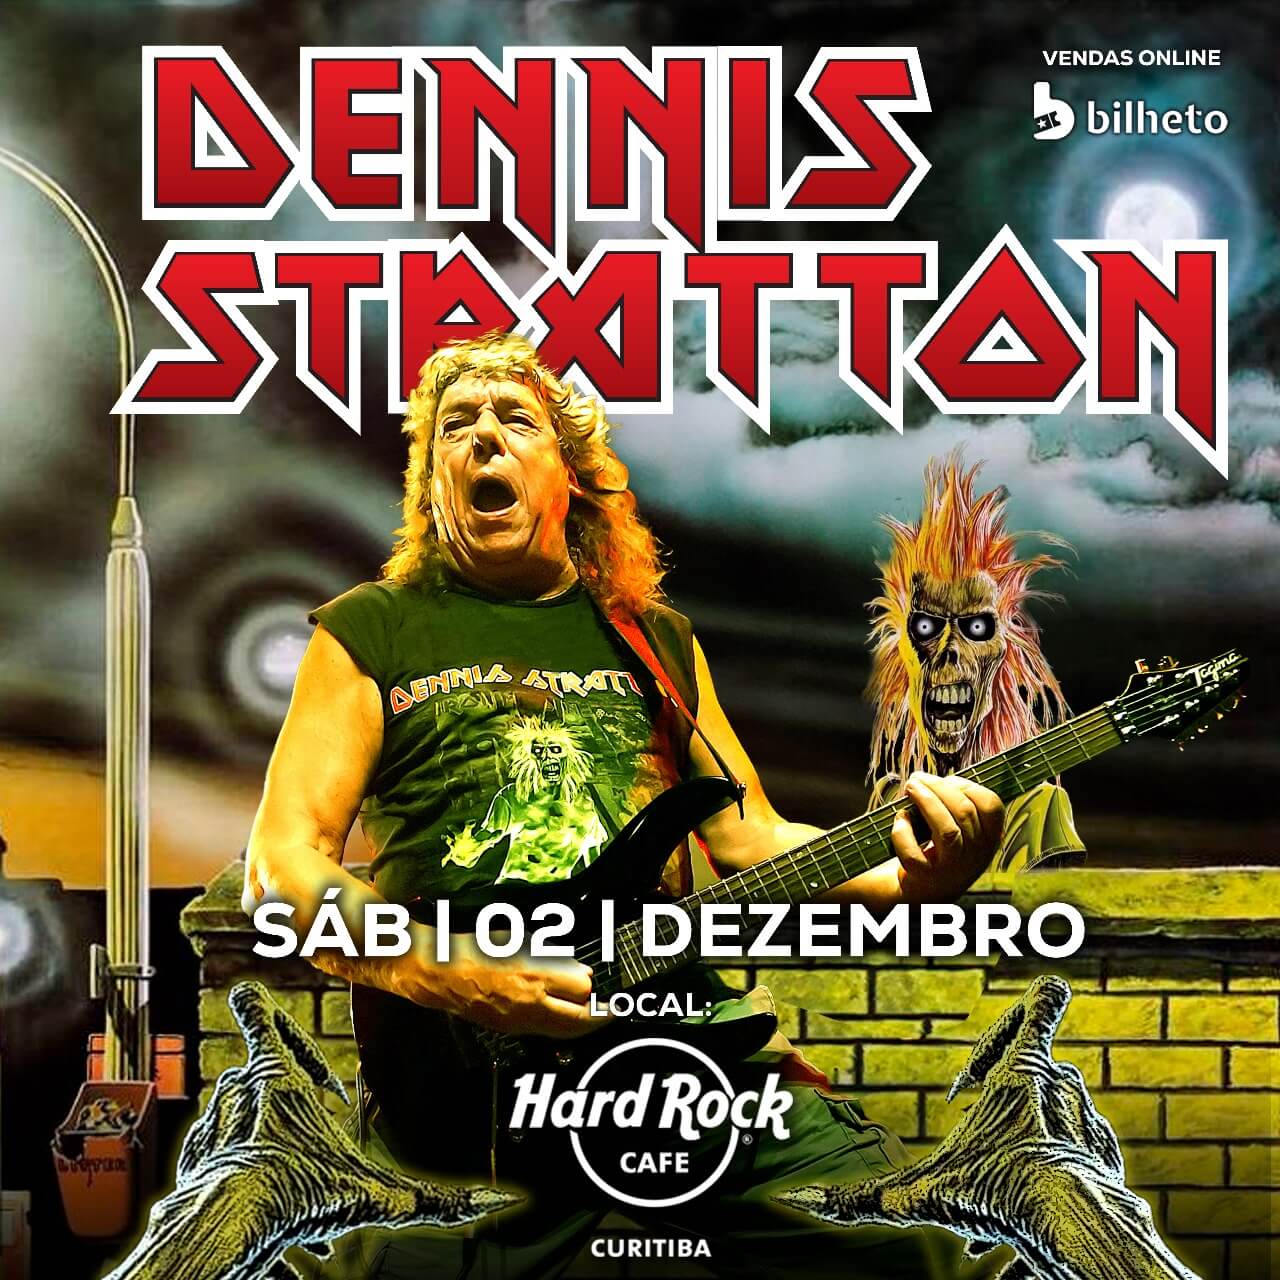 Iron Maiden: guitarrista original Dennis Stratton, estreia em Curitiba com show histórico no Hard Rock Cafe